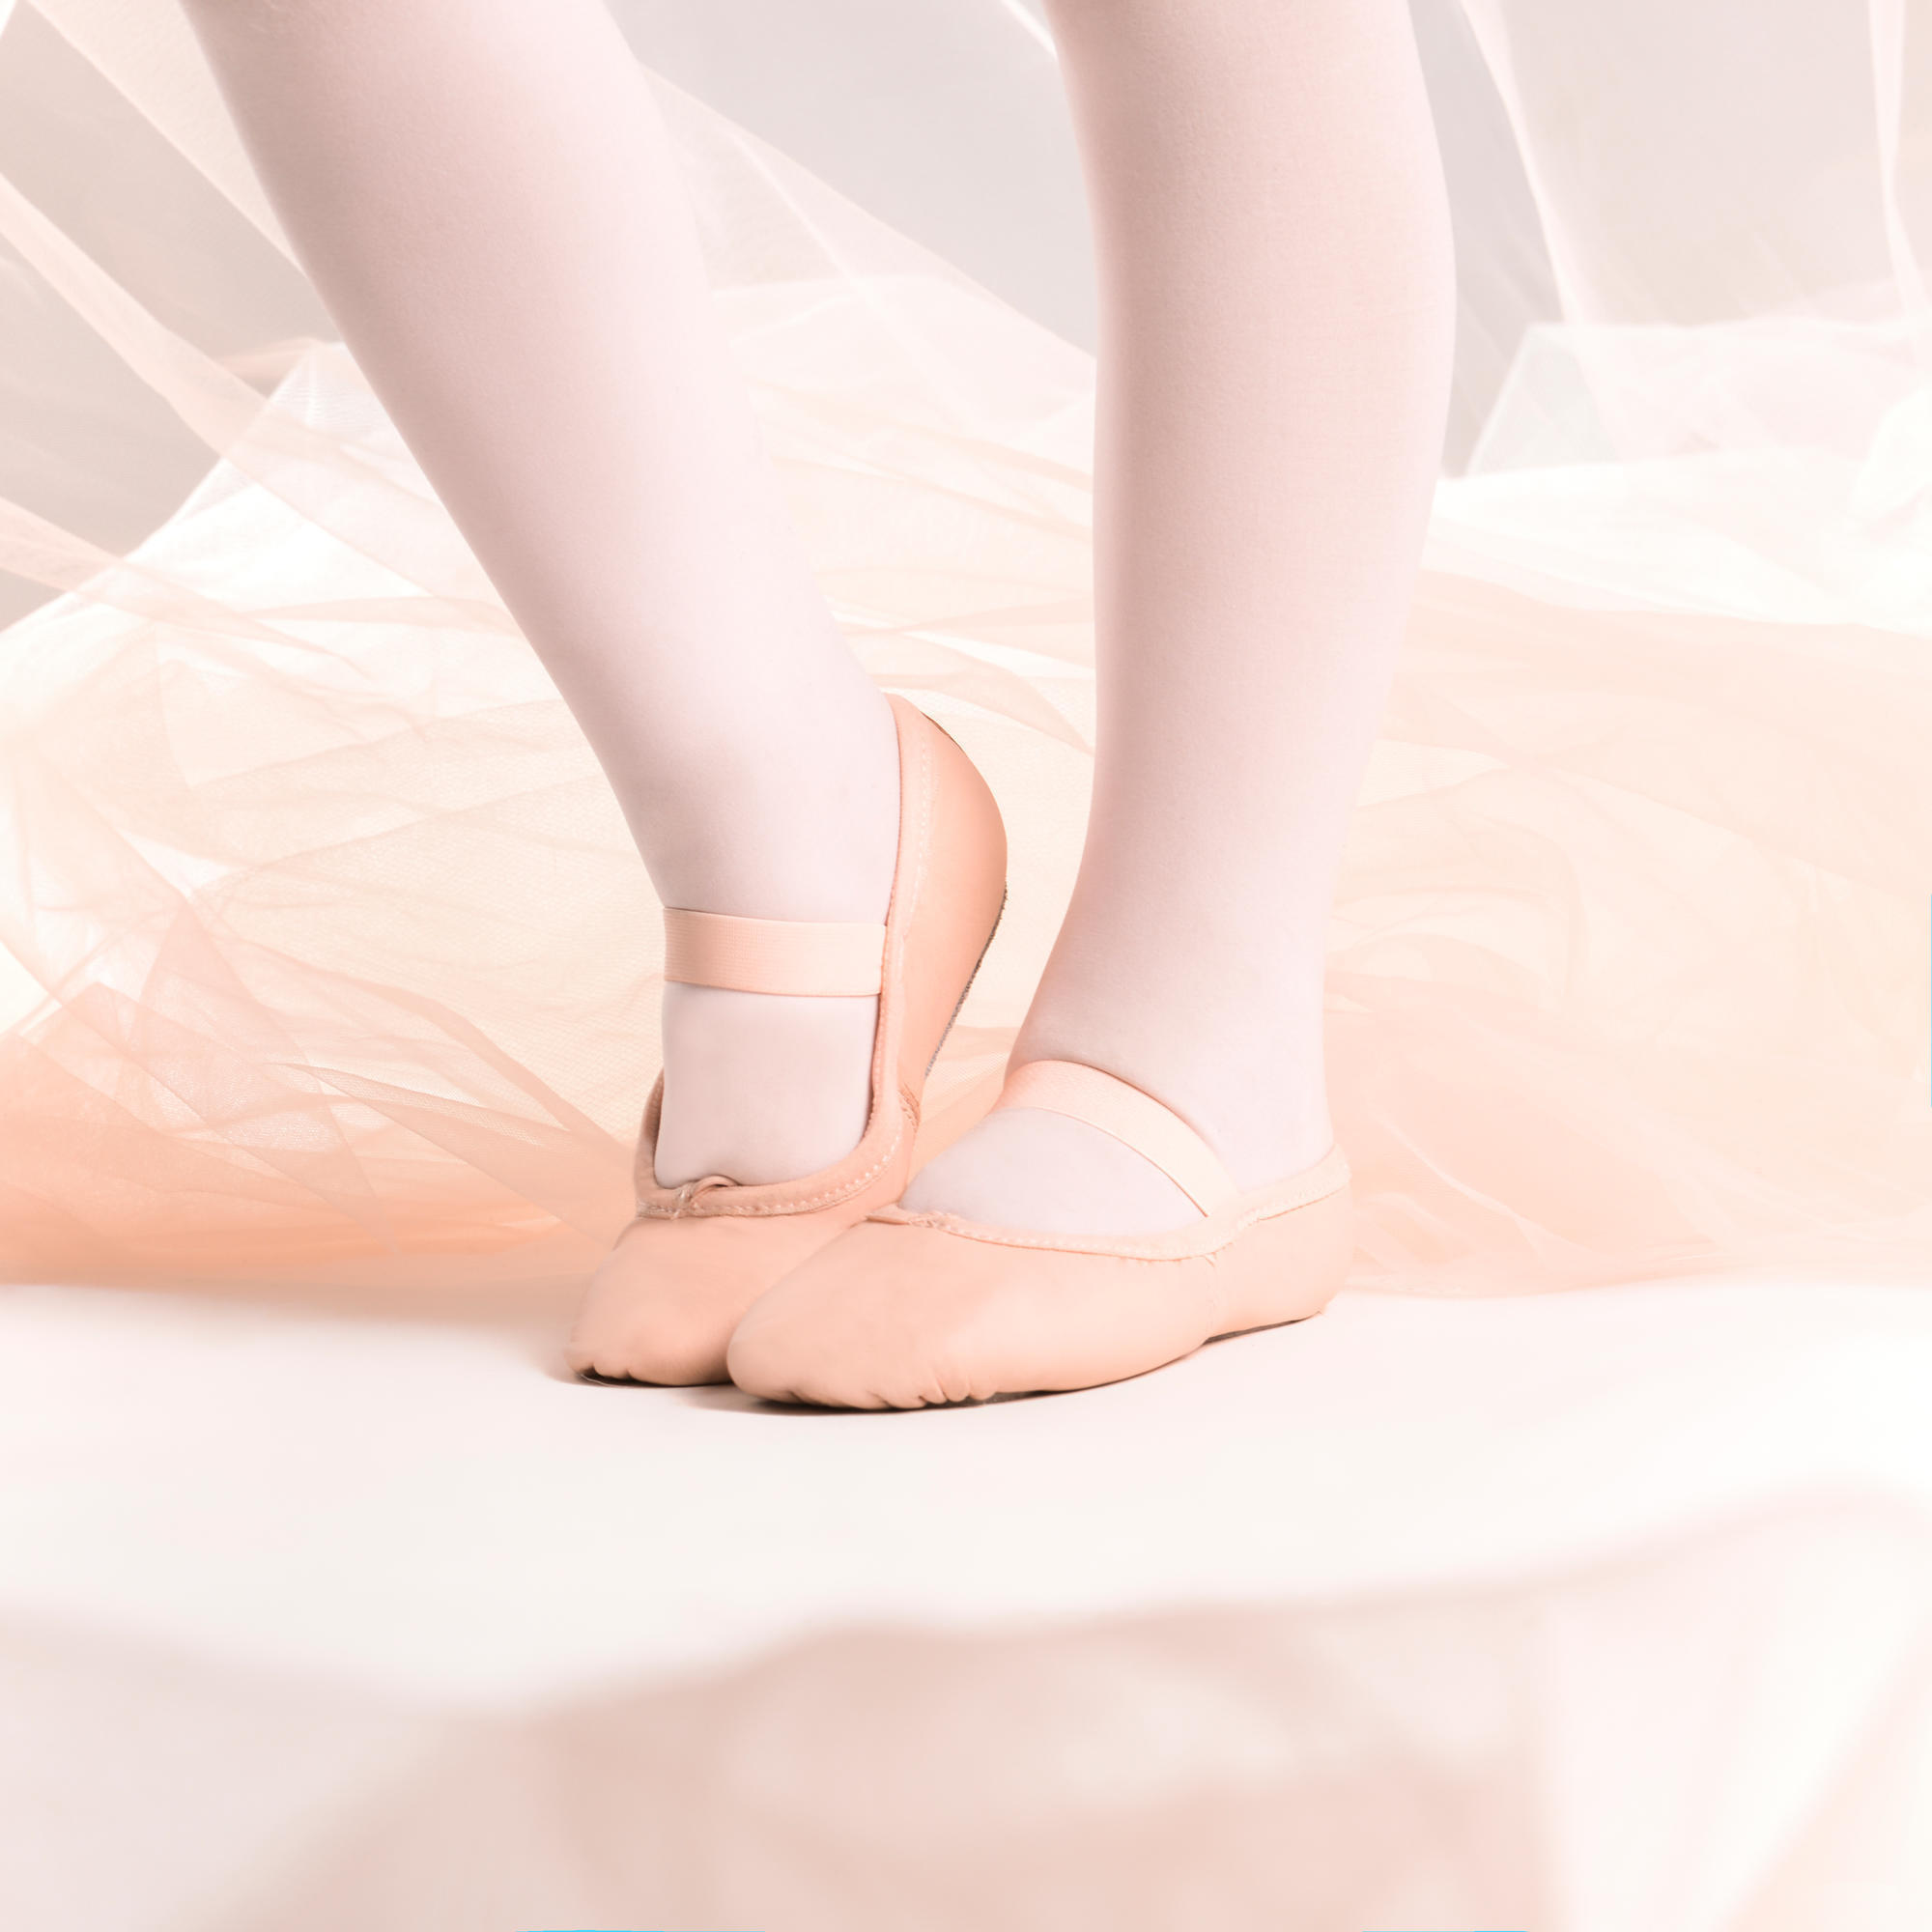 Demi-poante balet piele talpă întreagă roz mărimile 25-40 decathlon.ro  Balet